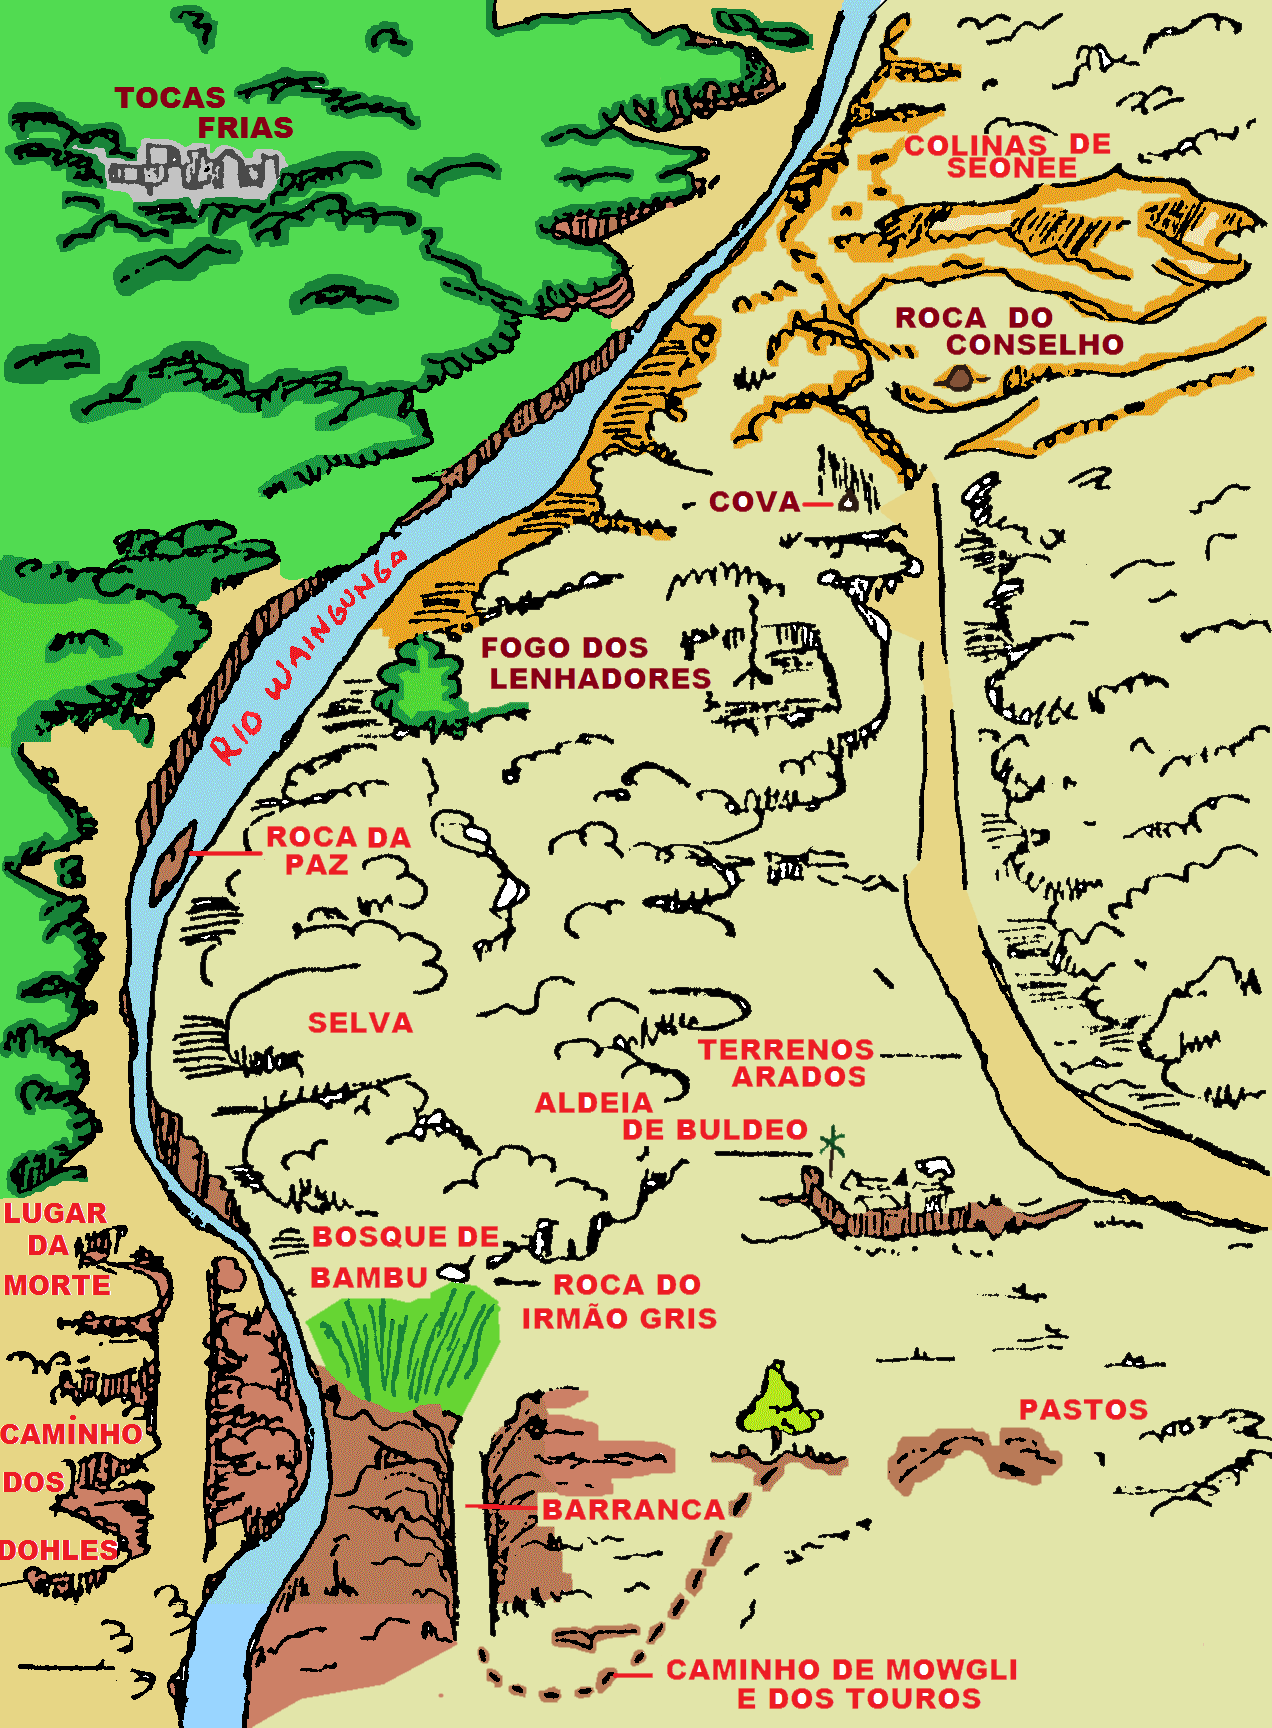 Mapa da Jângal, criação de Luiz Carlos Gabriel, colorizada por Paulo Cabello